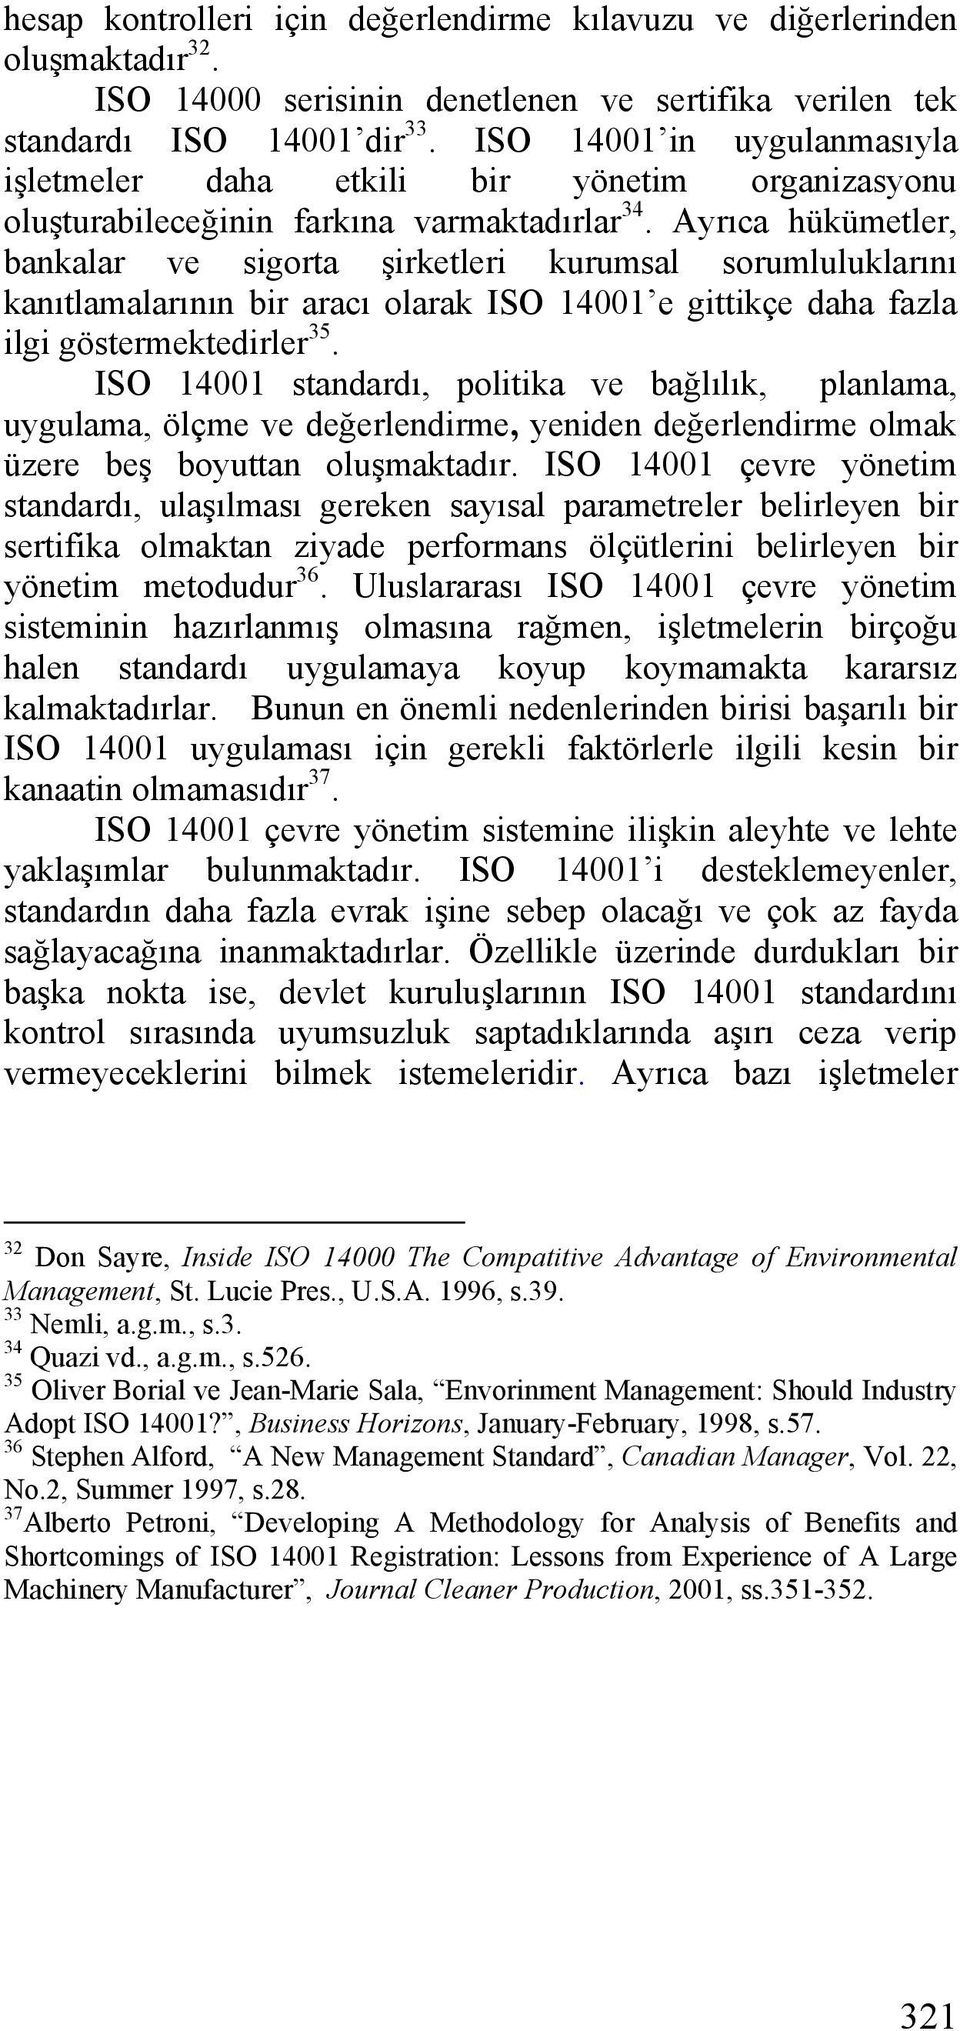 Ayrıca hükümetler, bankalar ve sigorta şirketleri kurumsal sorumluluklarını kanıtlamalarının bir aracı olarak ISO 14001 e gittikçe daha fazla ilgi göstermektedirler 35.